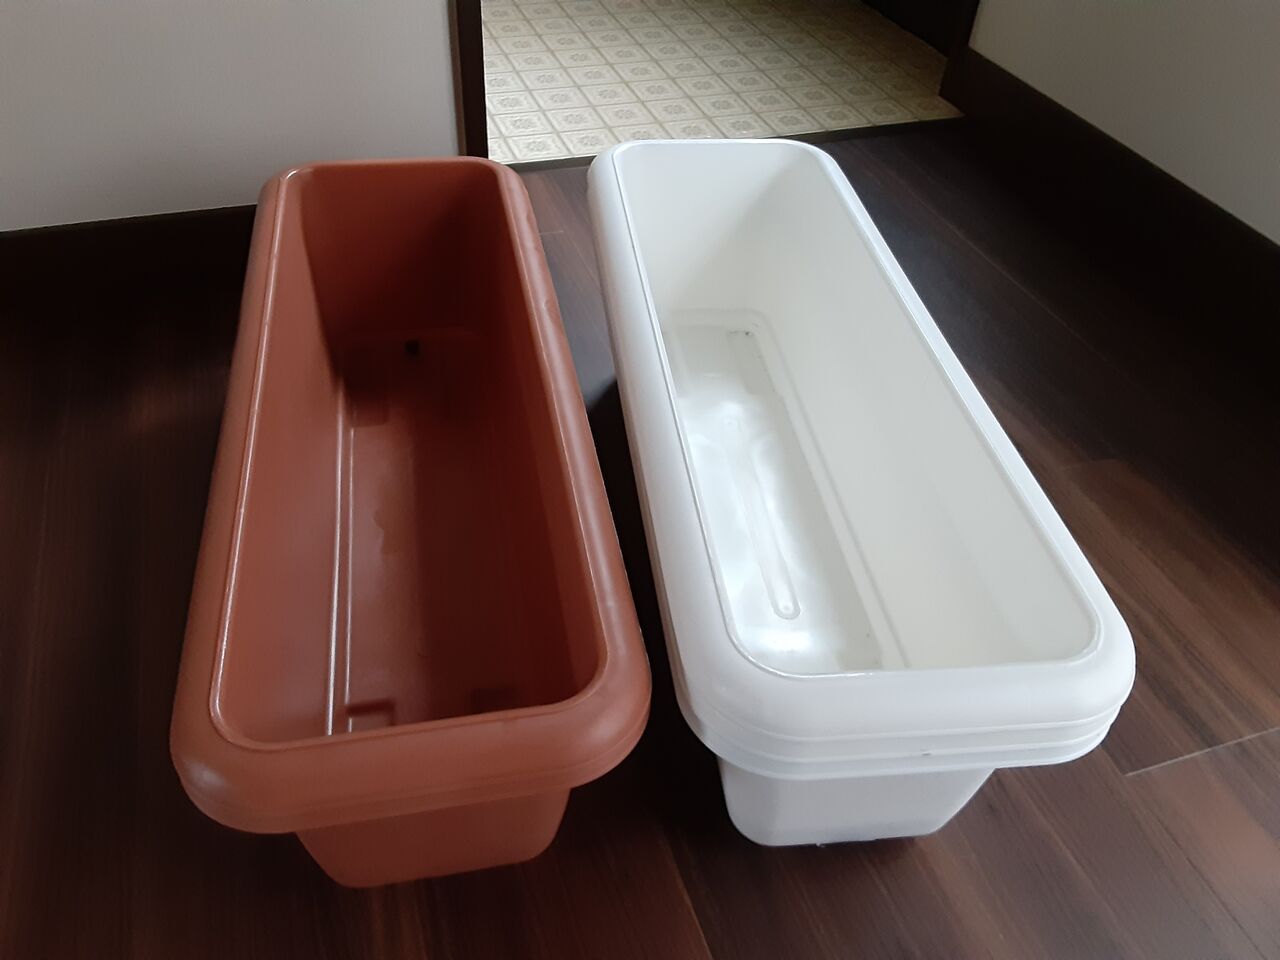 これからの メダカ飼育容器 は 全面プランターに切り替え 日本メダカ協会東京支部の公式ページ